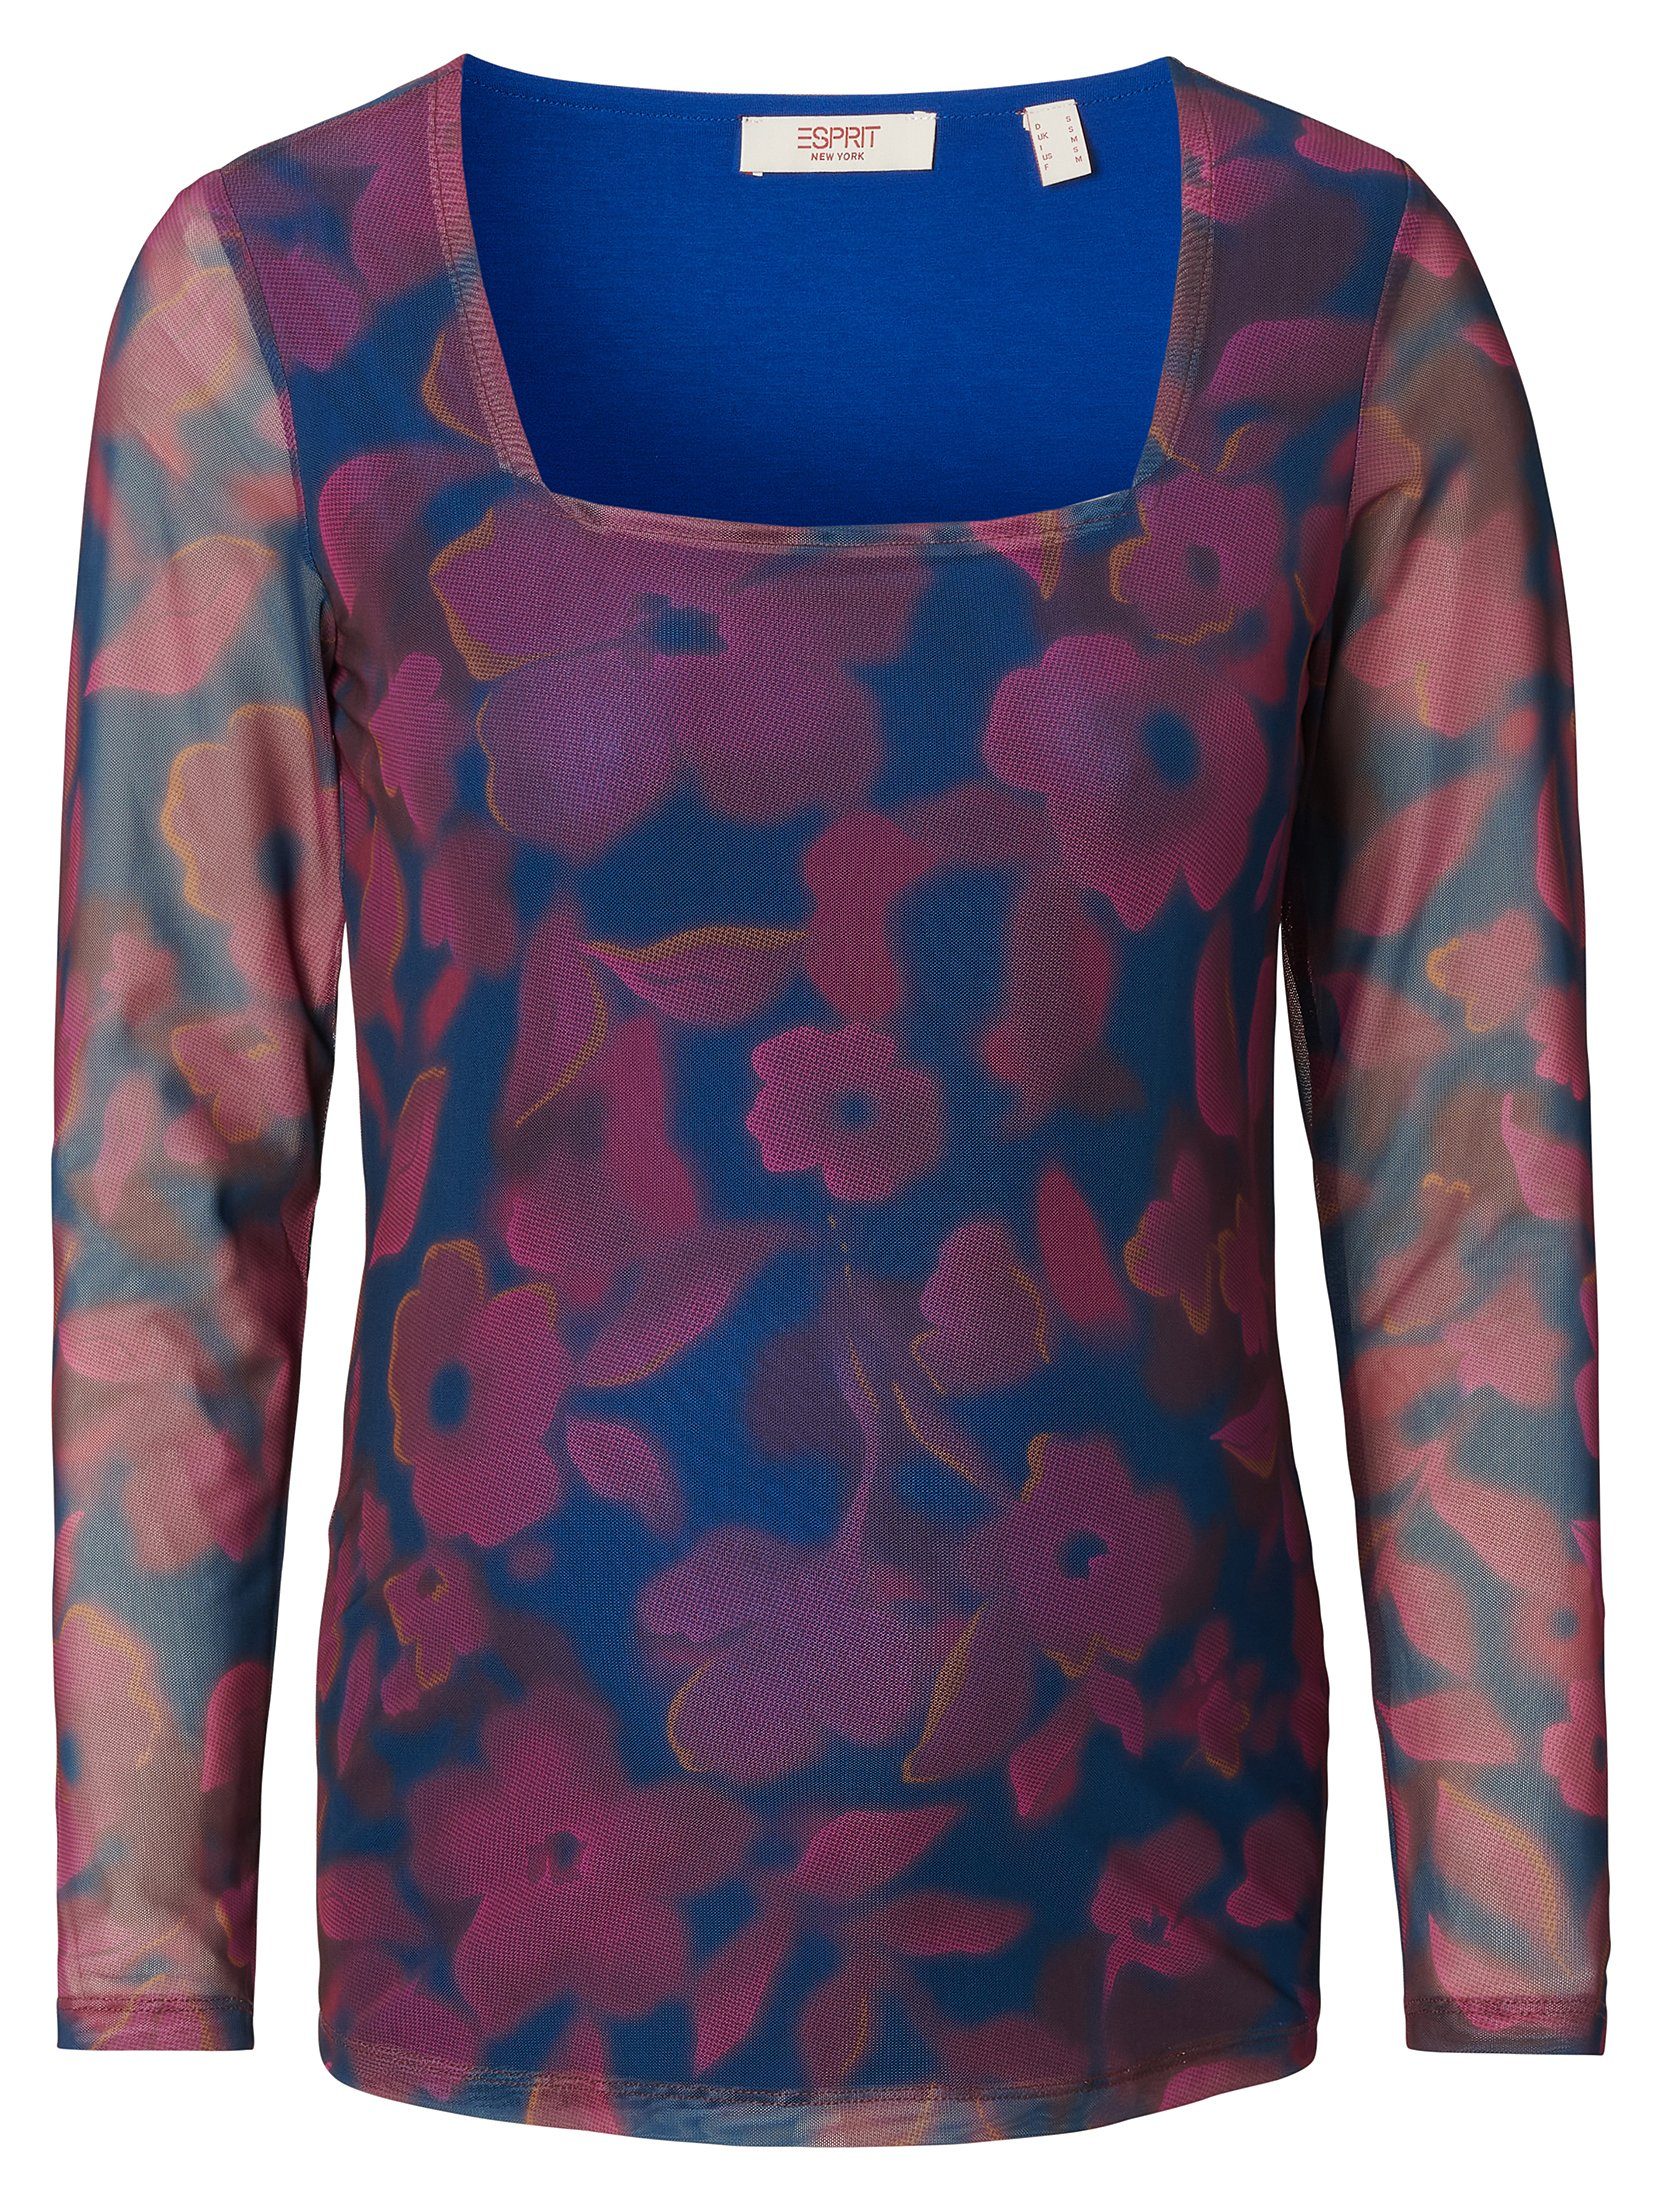 Rosa Esprit Shirts für Damen online kaufen | OTTO